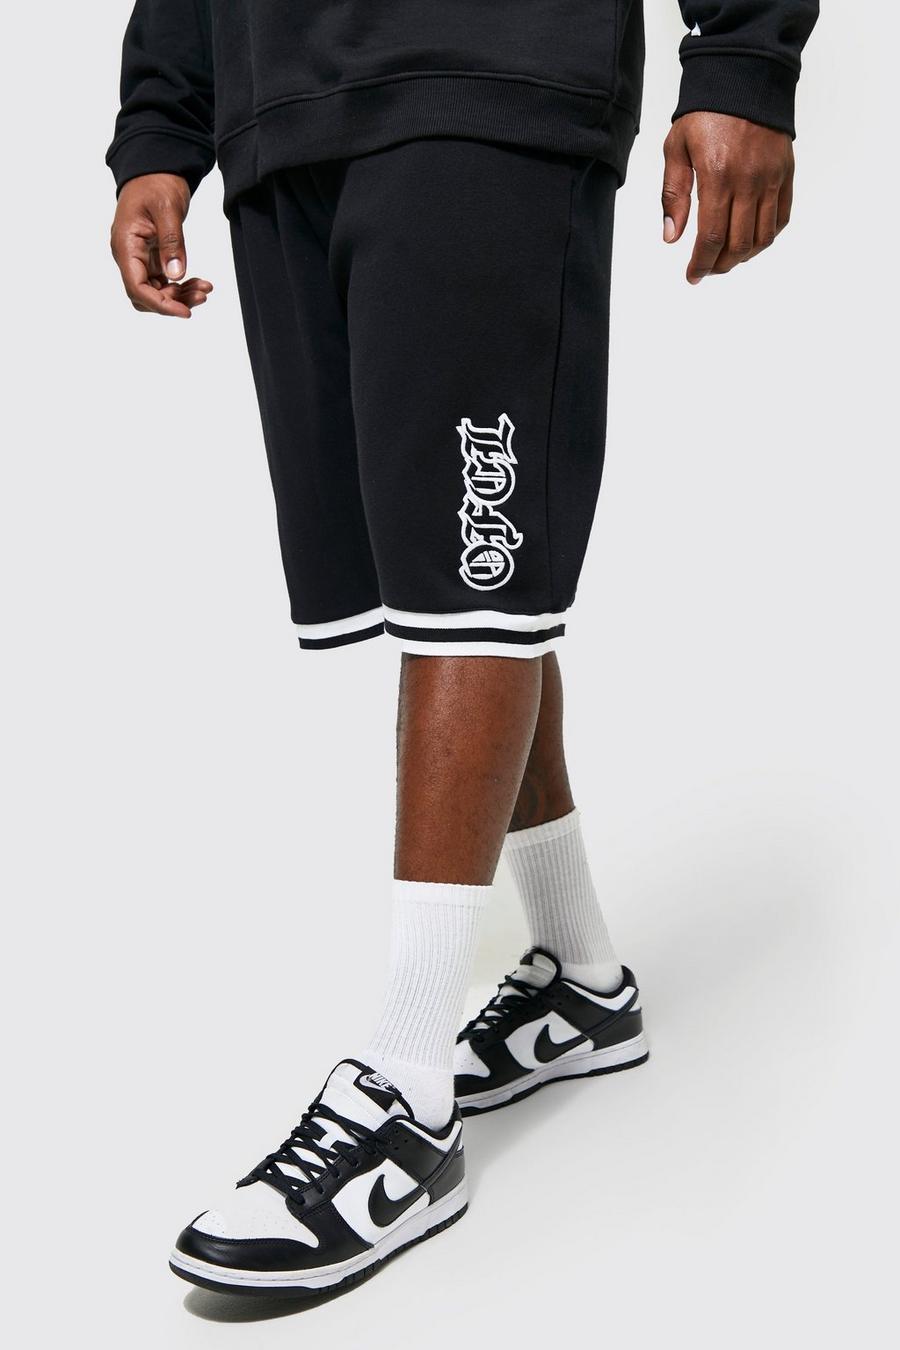 Pantalón corto Plus Ofcl estilo baloncesto con aplique universitario, Black nero